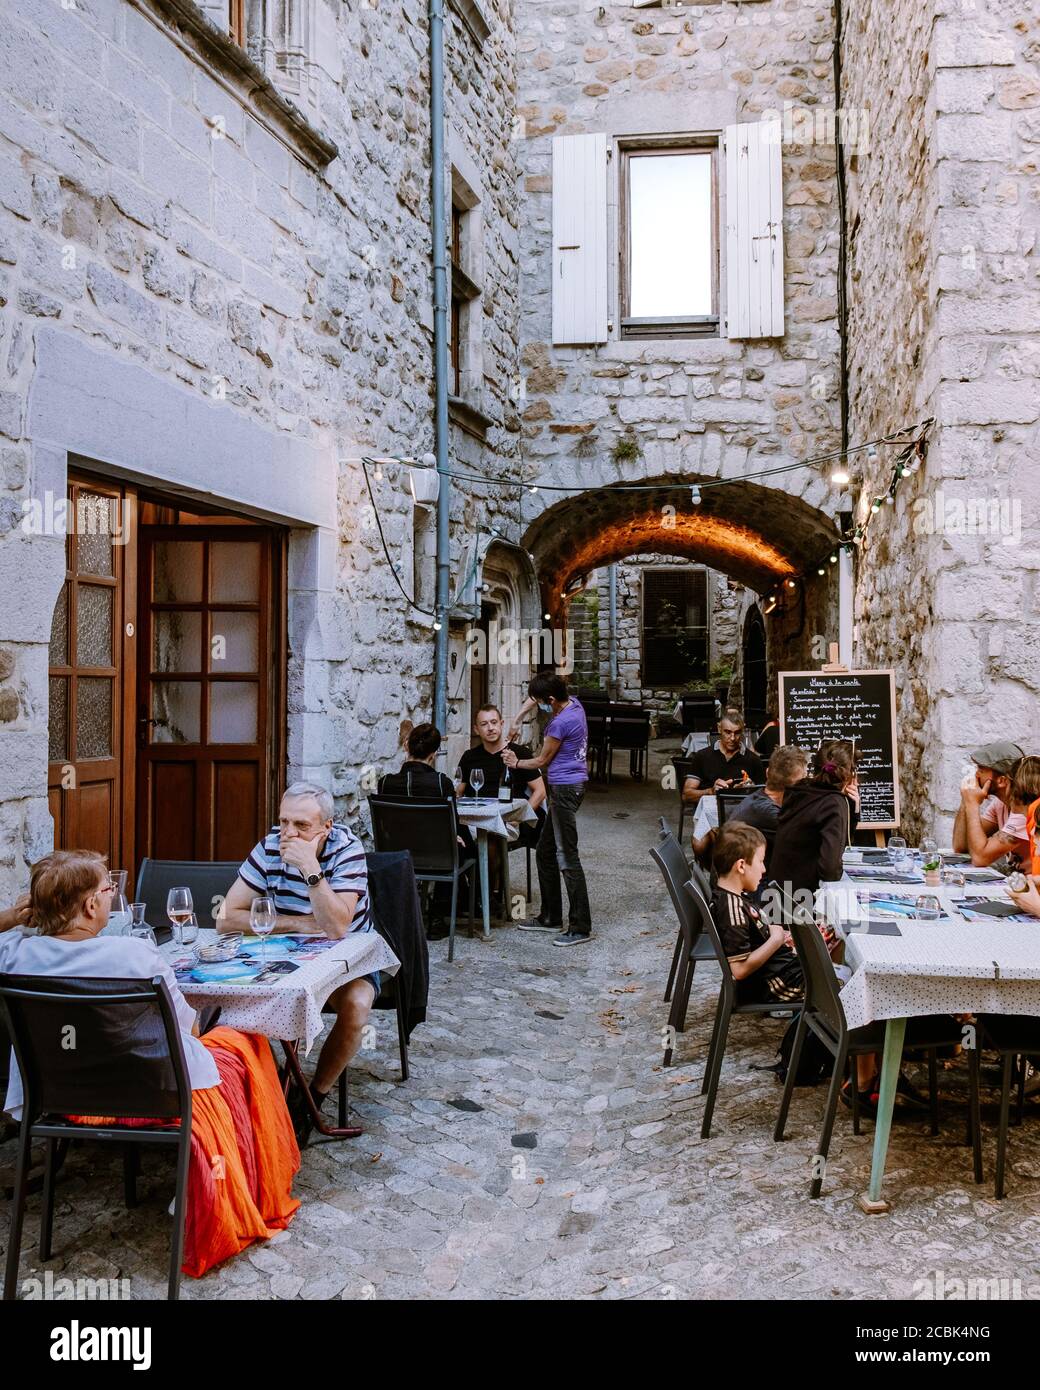 Ruoms Ardèche France juin 2020, personnes en restaurant au village médiéval de Ruoms avec ses vieilles maisons en briques et ses petites ruelles sur la rivière Ardèche Banque D'Images